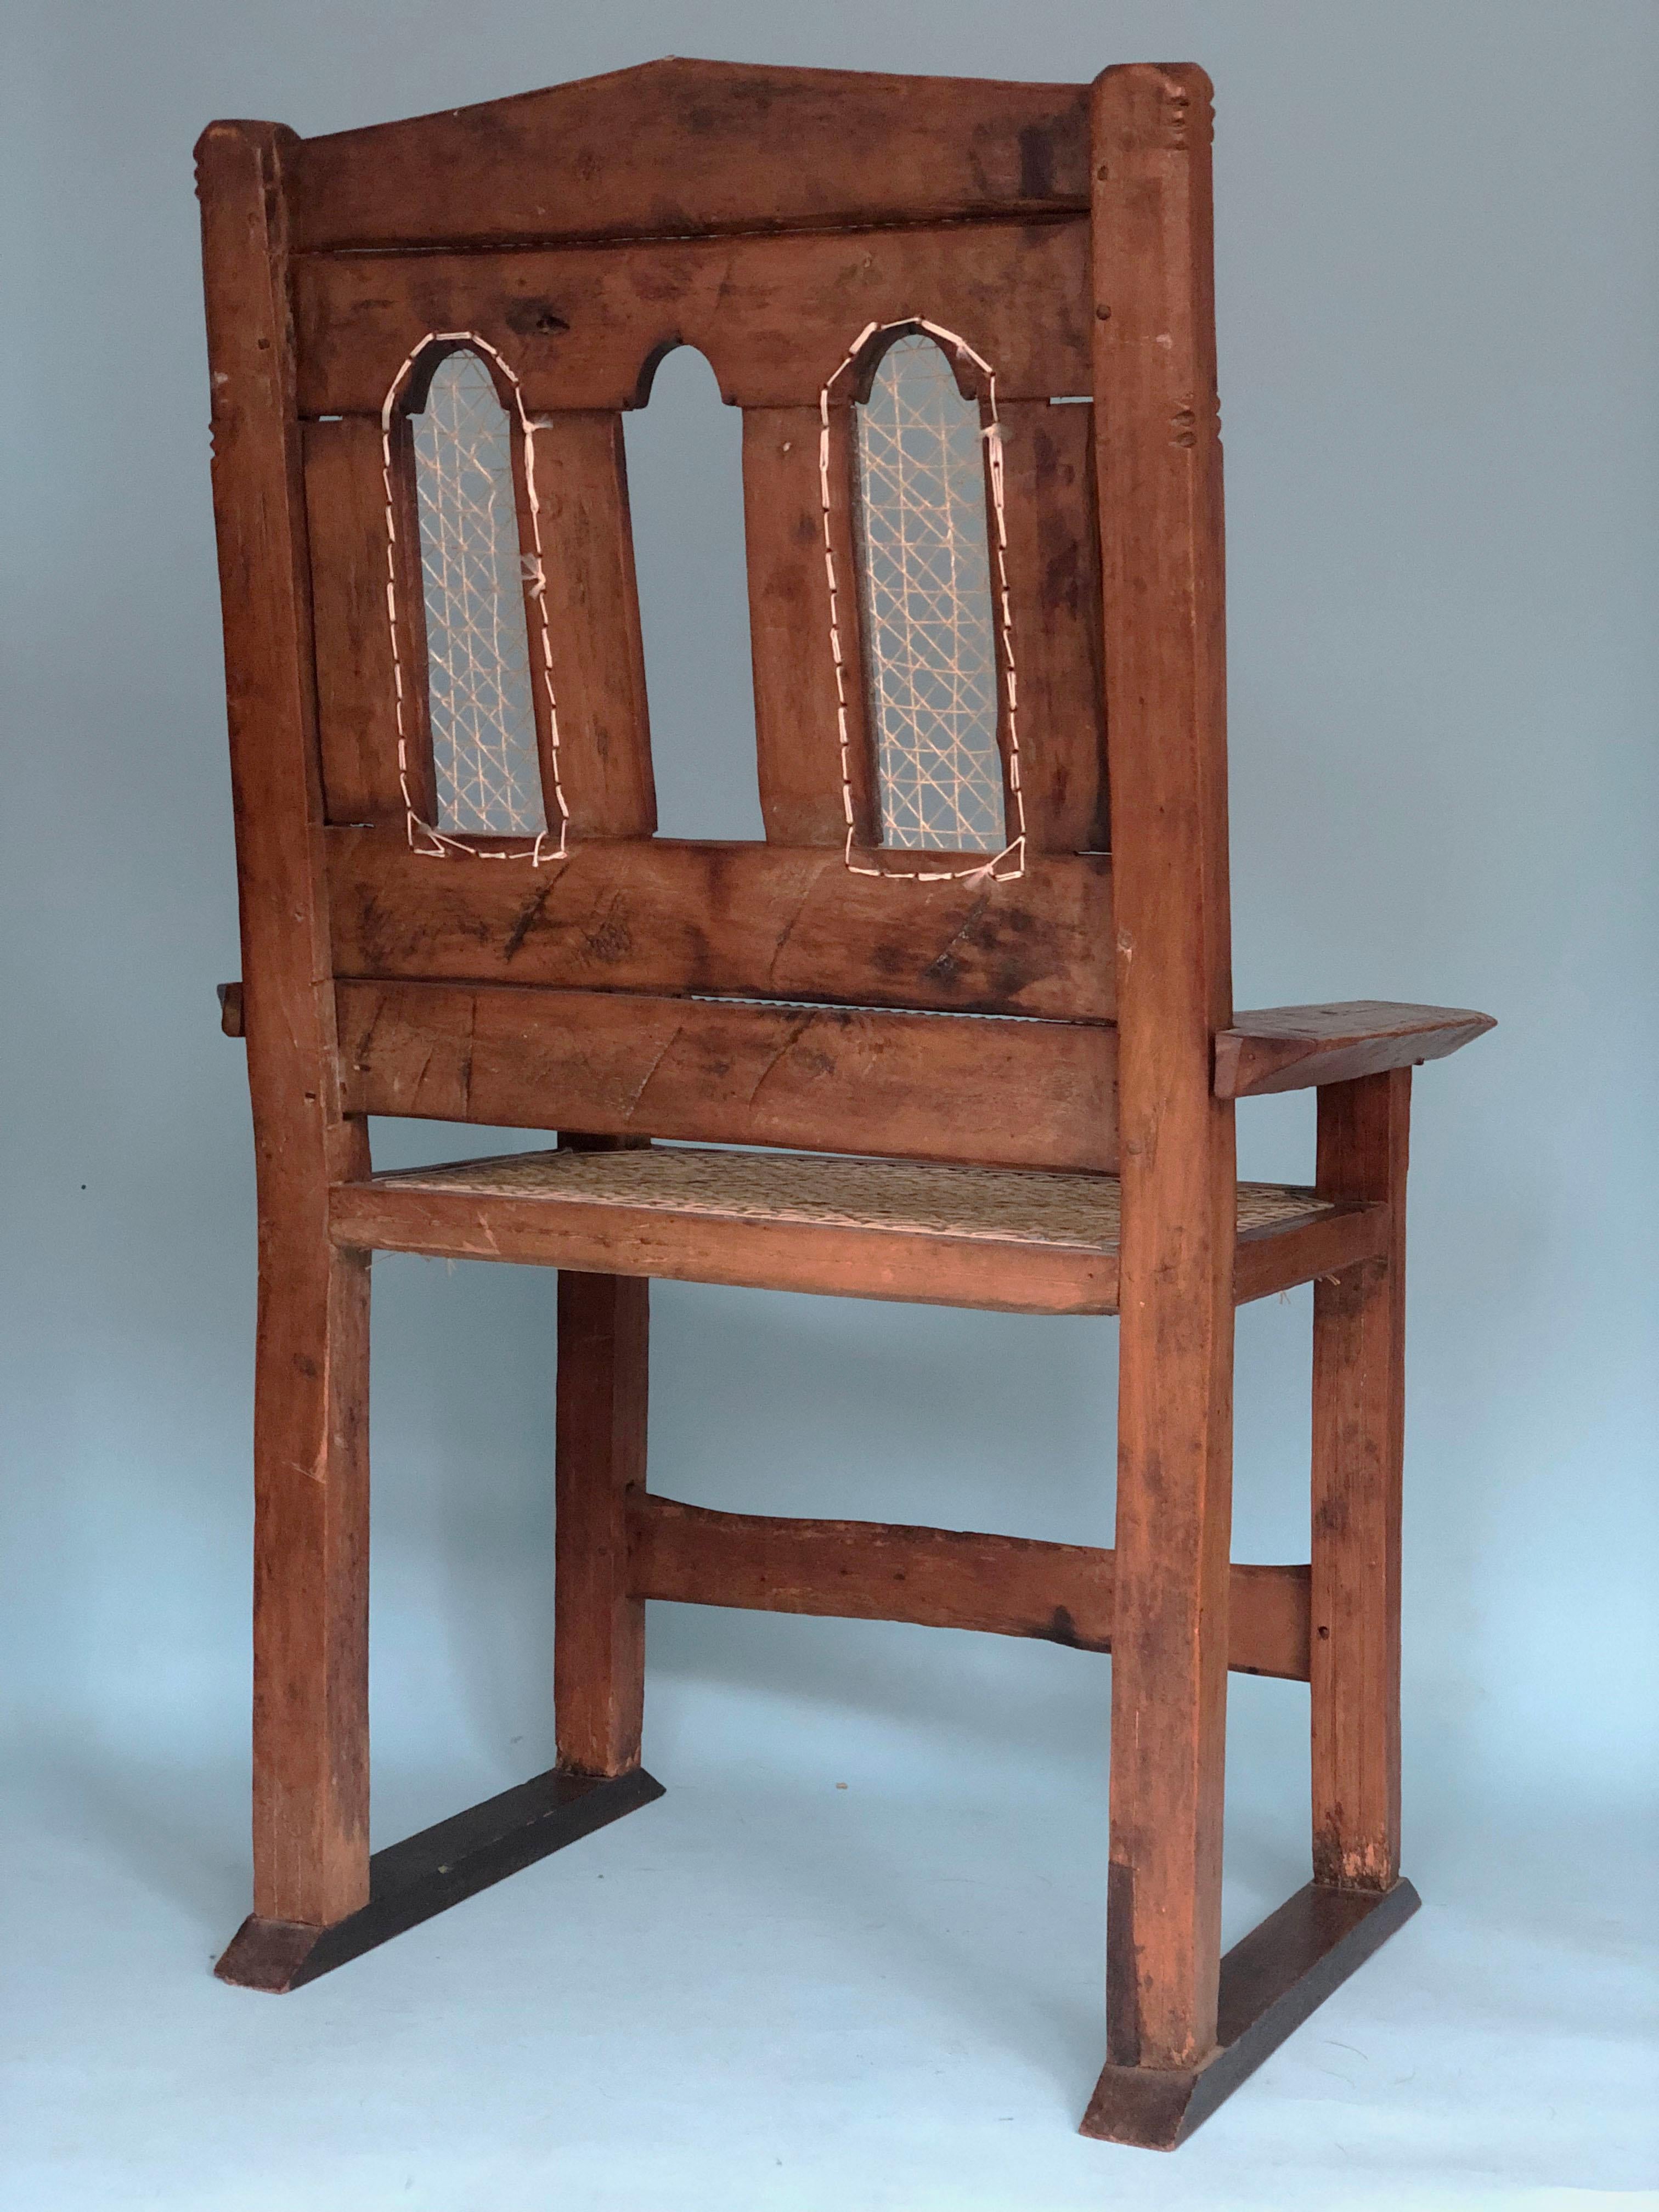 Ein schöner handgeschnitzter indischer Stuhl aus Teakholz. Das reiche Aussehen des Stuhls wurde mit einem neuen Seil für Sitz und Rückenlehne versehen, so wie es früher einmal war. In der Armlehne des verwitterten Stuhls ist ein Name